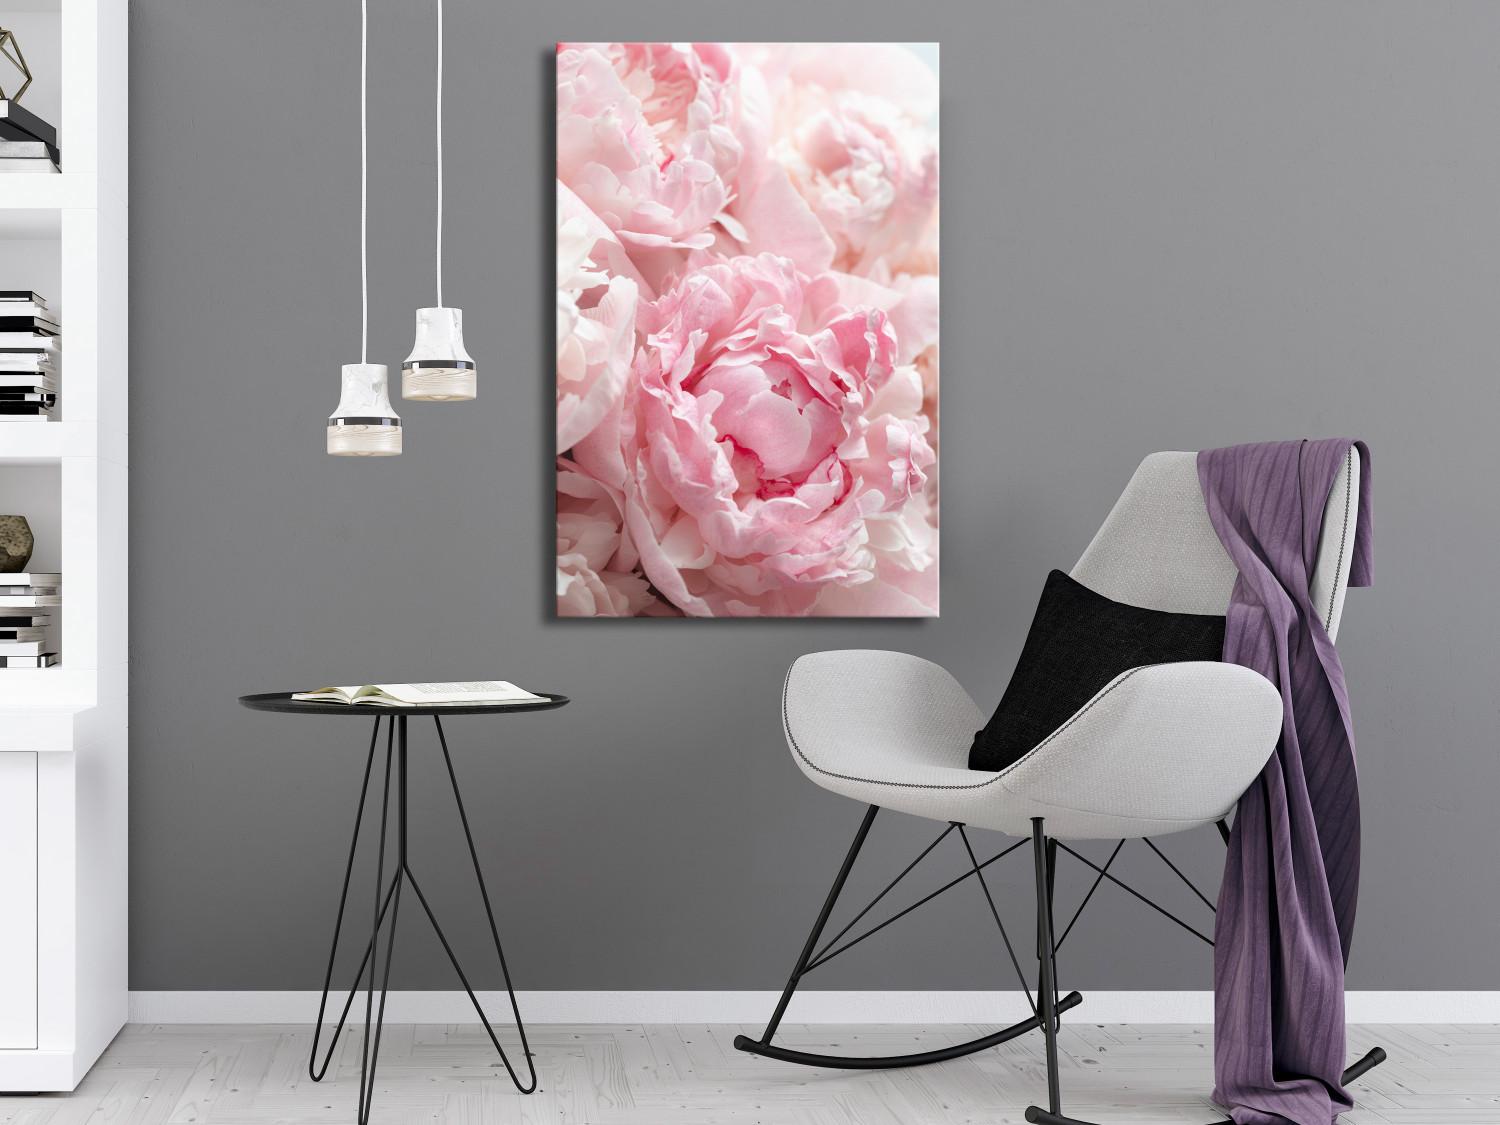 Cuadro decorativo Florecer en tonos naturales (1 parte) - peonía rosa en matices rosados